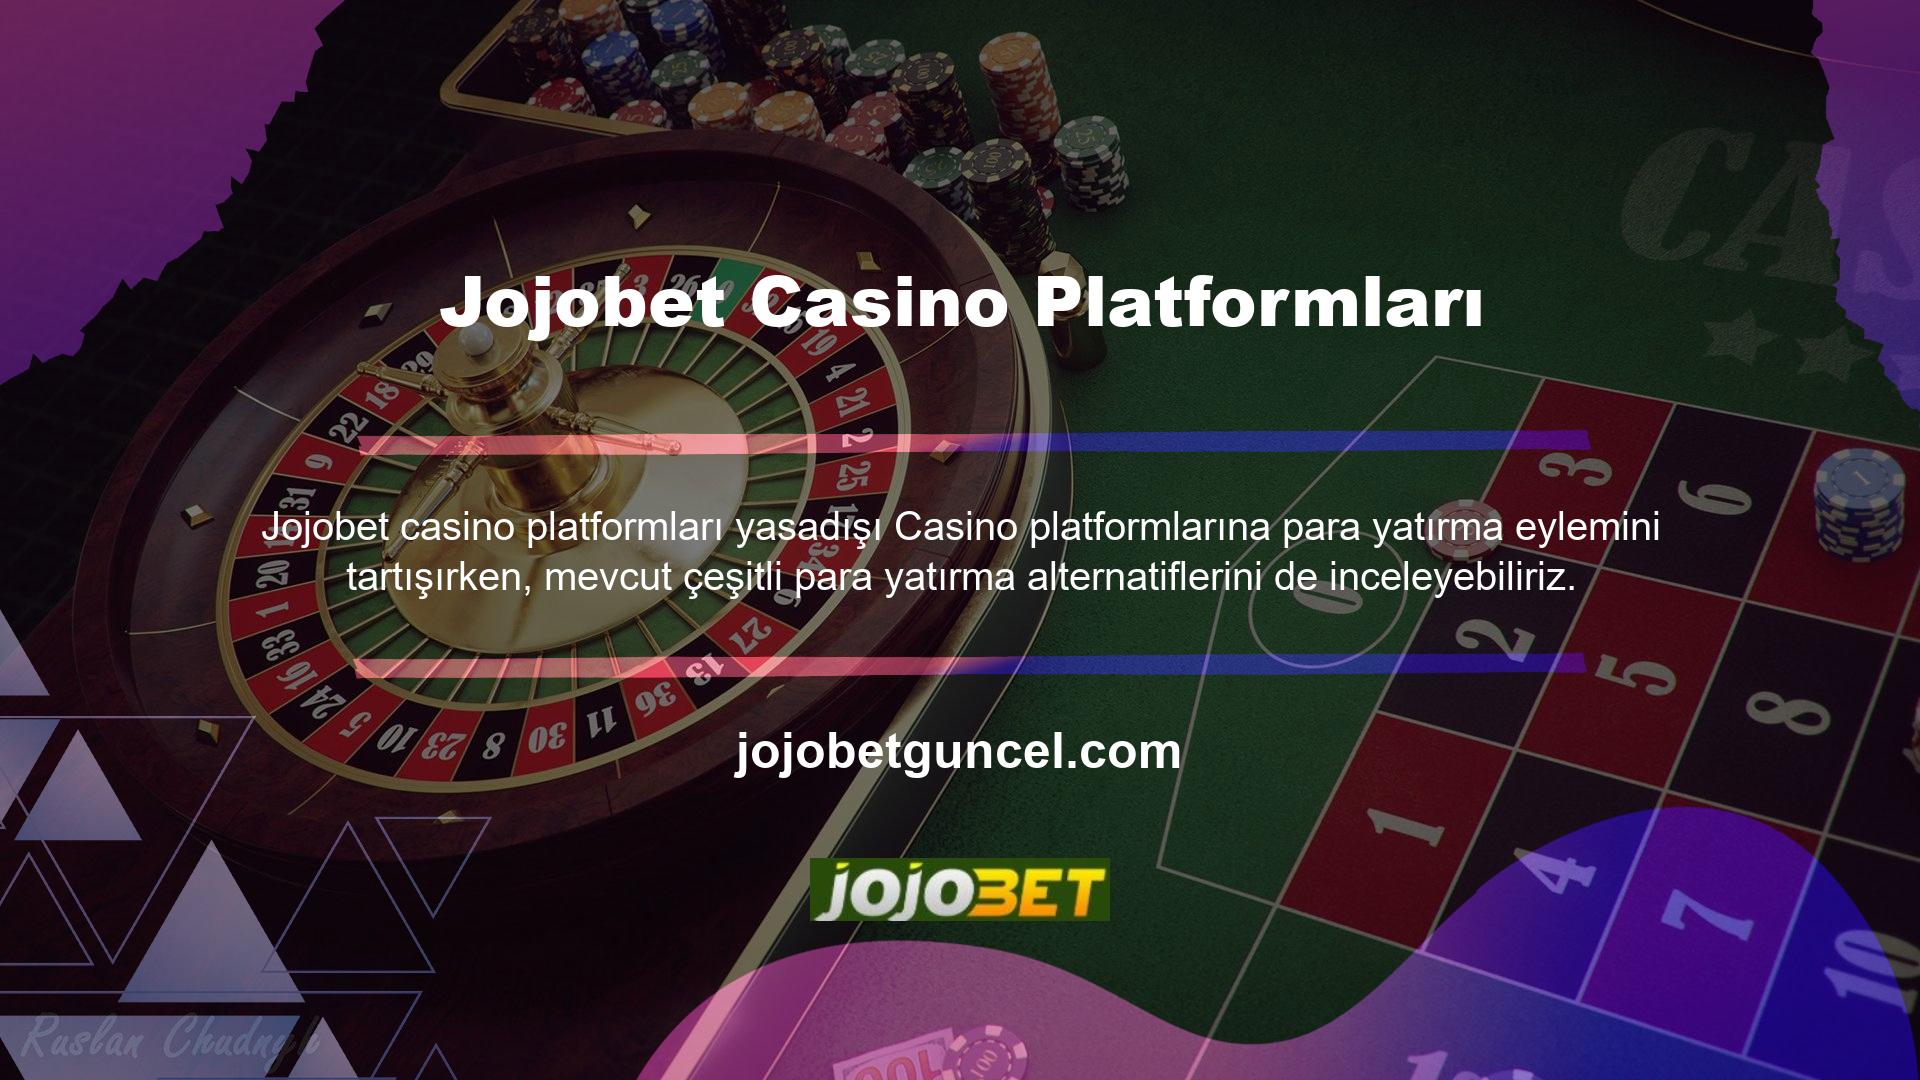 Jojobet paralarını yatırmak için farklı yöntemler kullanıyorÇevrimiçi Casino platformlarına banka havalesi yoluyla para ekleyebileceğinizi biliyor musunuz? Banka hesabınıza para transferi karşılığında bonus alabilirsiniz